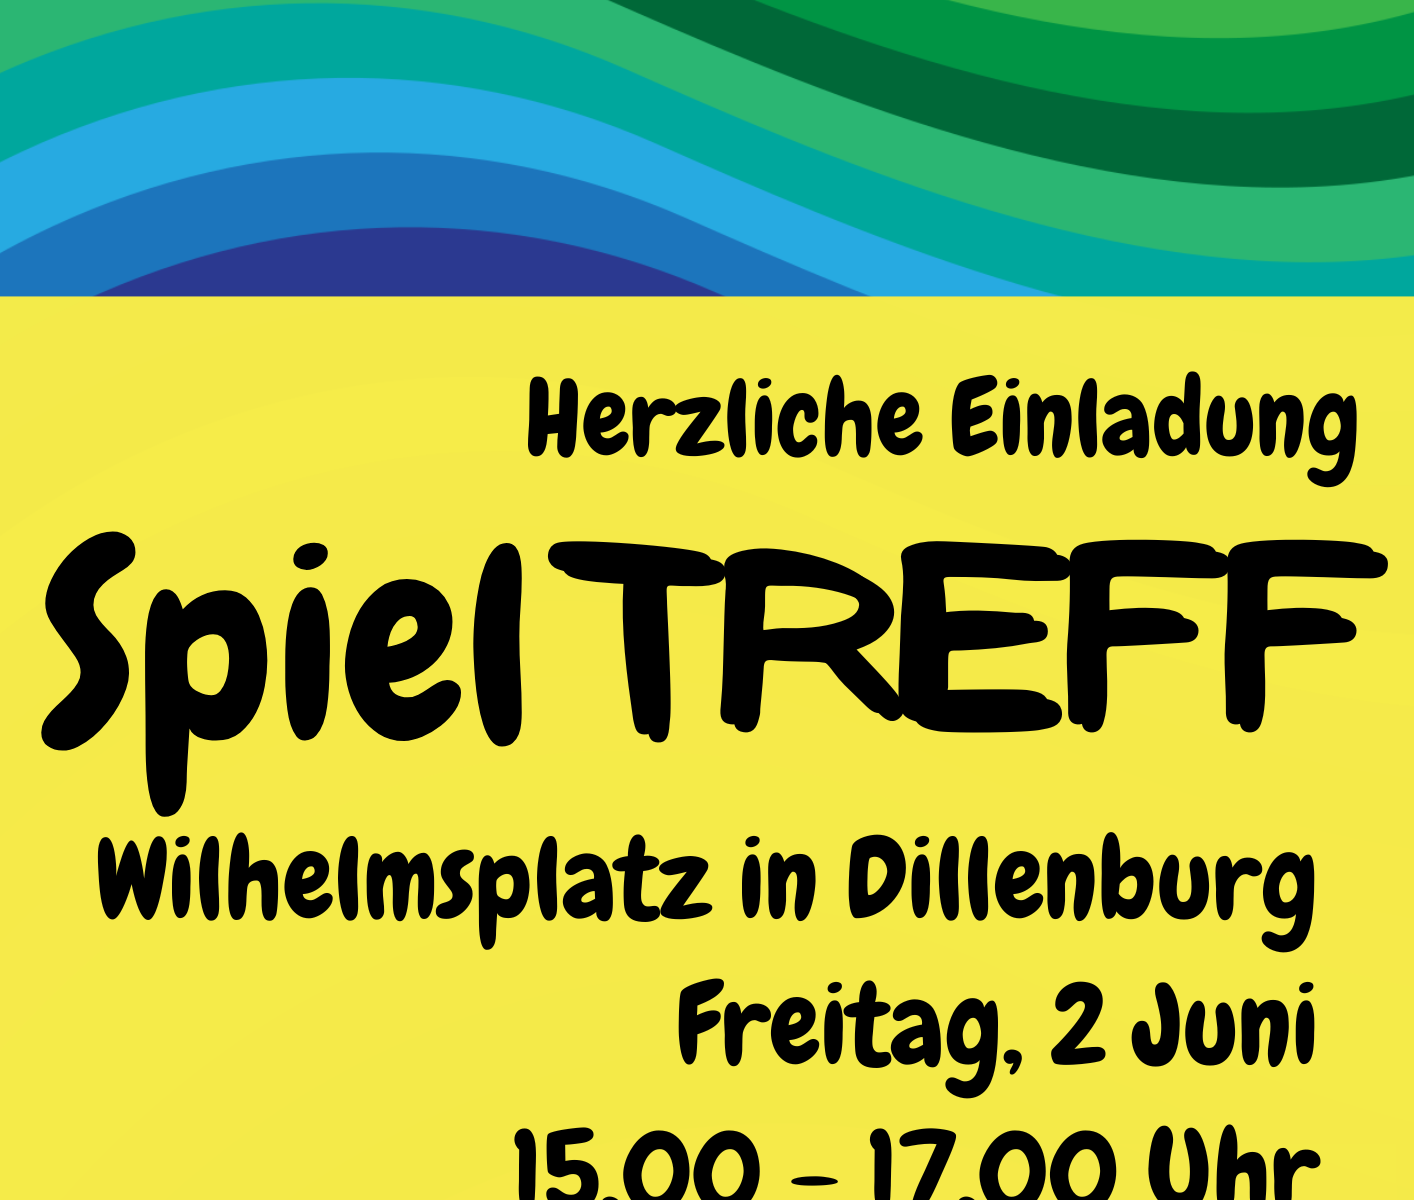 Ein Hinweisplakat auf den Spieltreff am Wilhelmsplatz am 02.06. von 15.00-17.00 Uhr